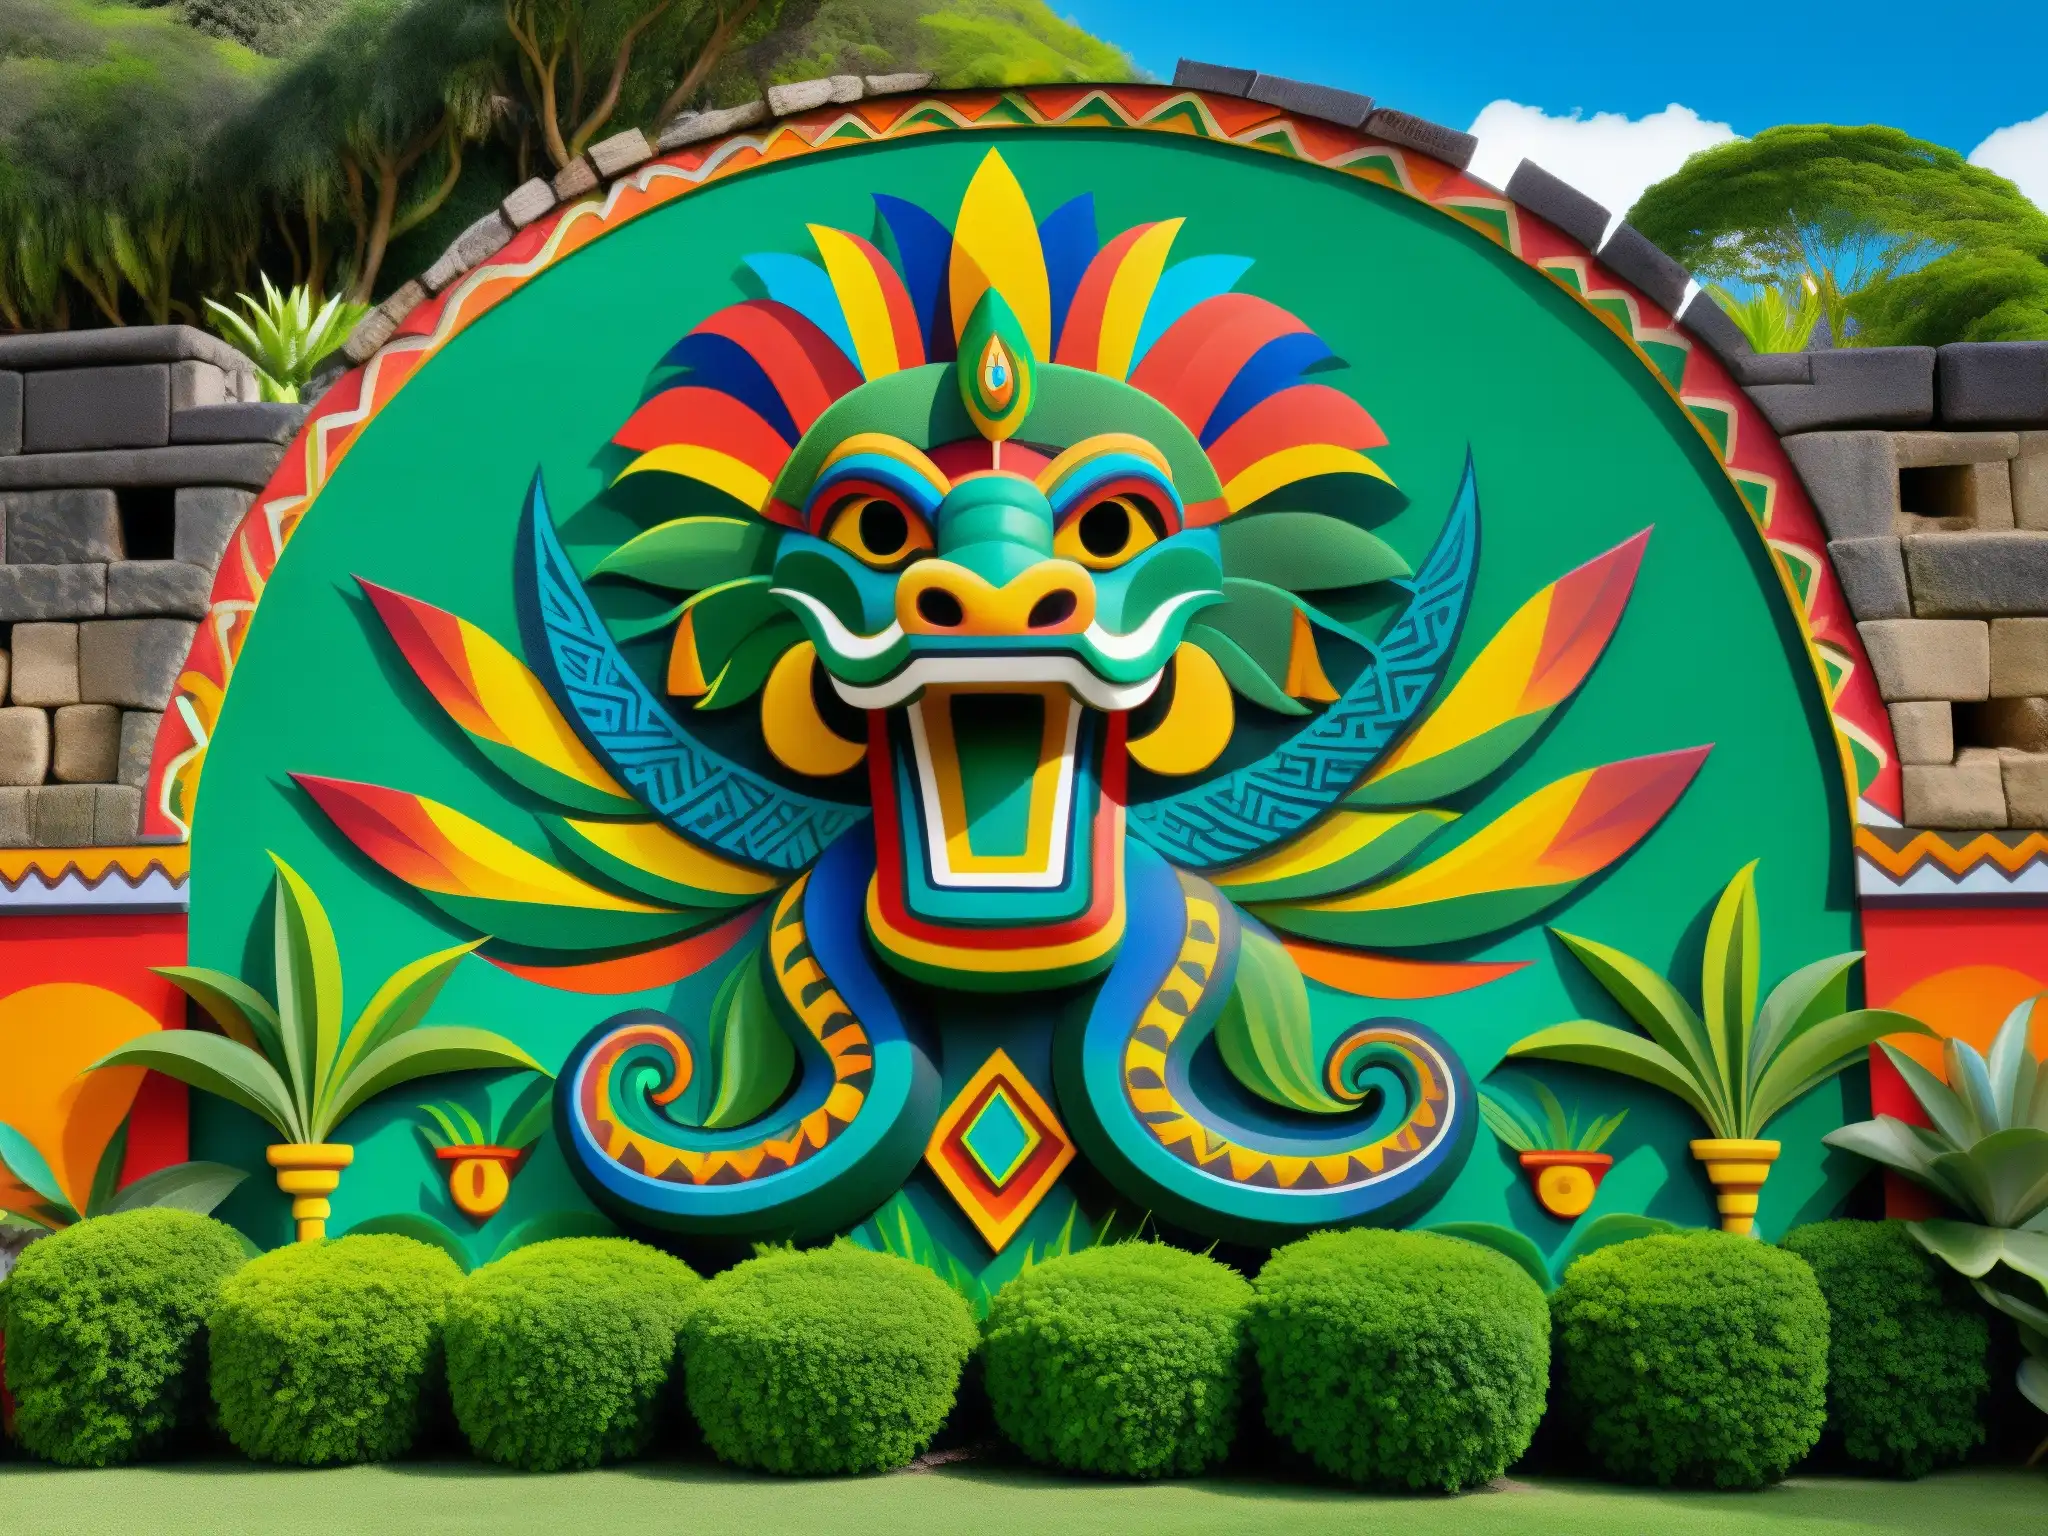 Vibrante mural de Quetzalcóatl, deidad serpiente emplumada, en muro de piedra, evocando la rica cultura y mitología mexicana